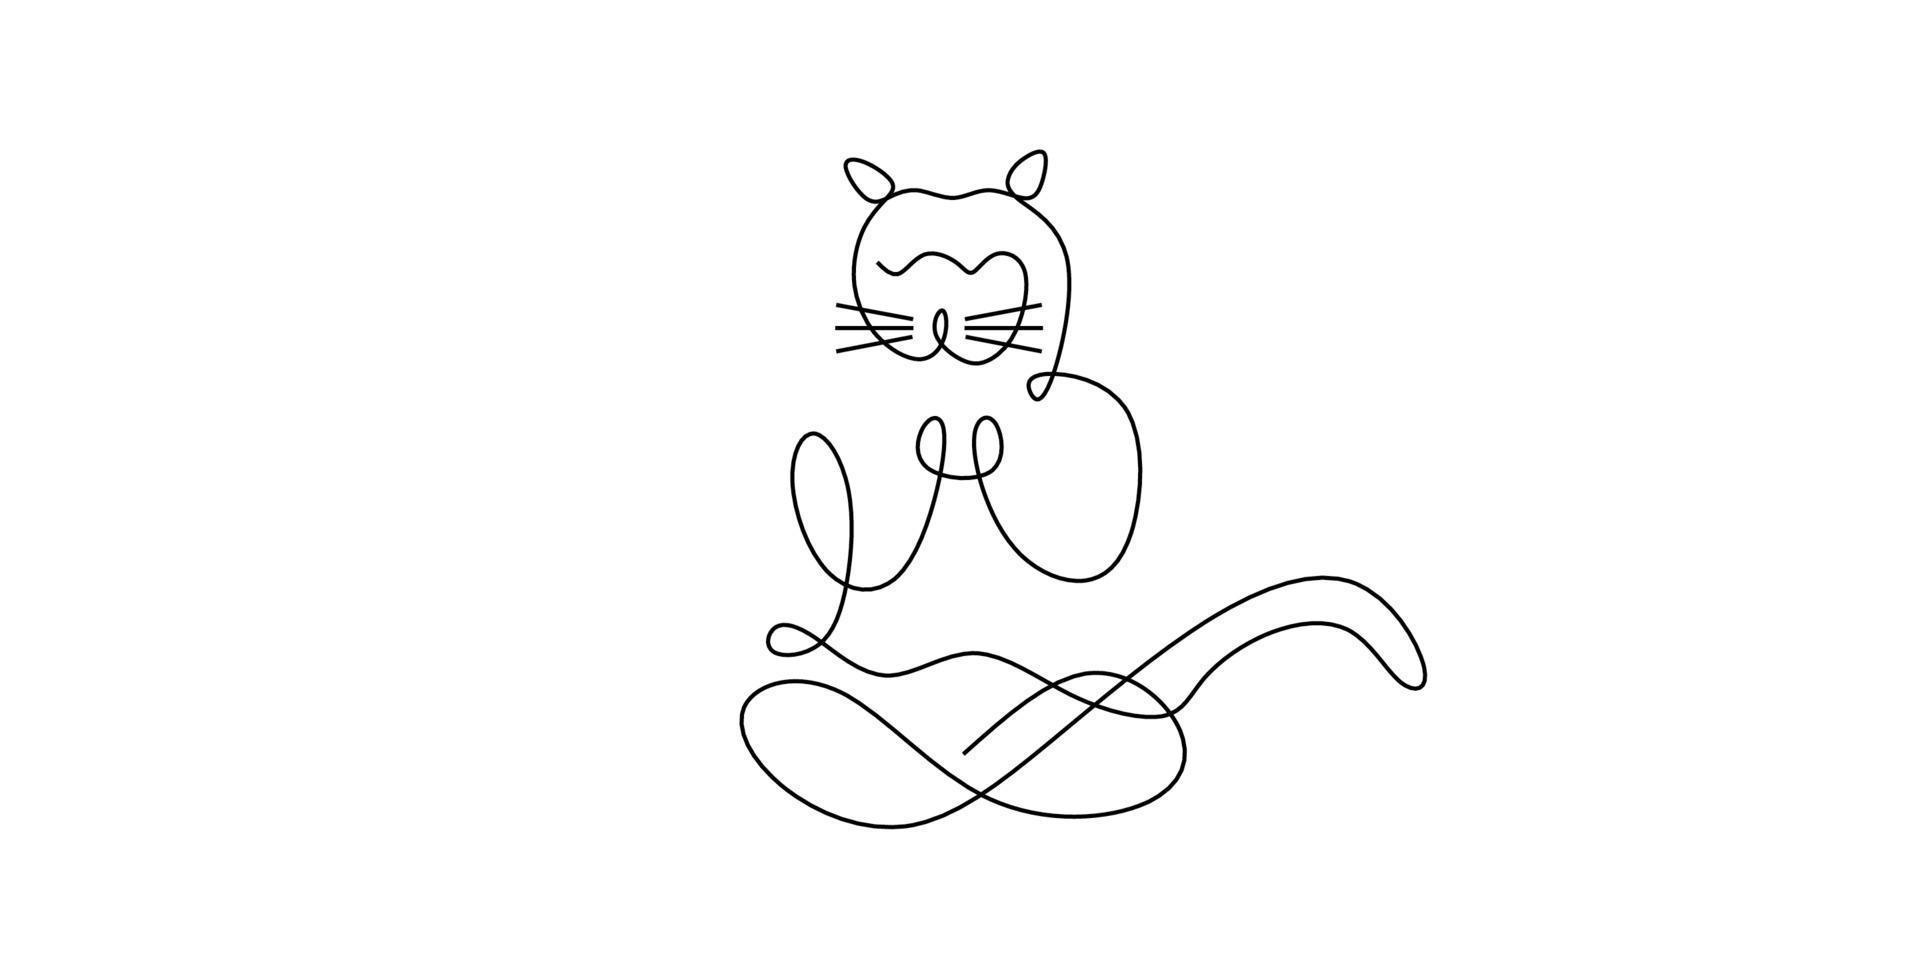 kontinuierliche eine Strichzeichnung der sitzenden Katze, die Yoga lokalisiert auf weißem Hintergrund tut. eine Linie Design Silhouette der wilden Katze. Hand gezeichneten Minimalismus Stil. vektor